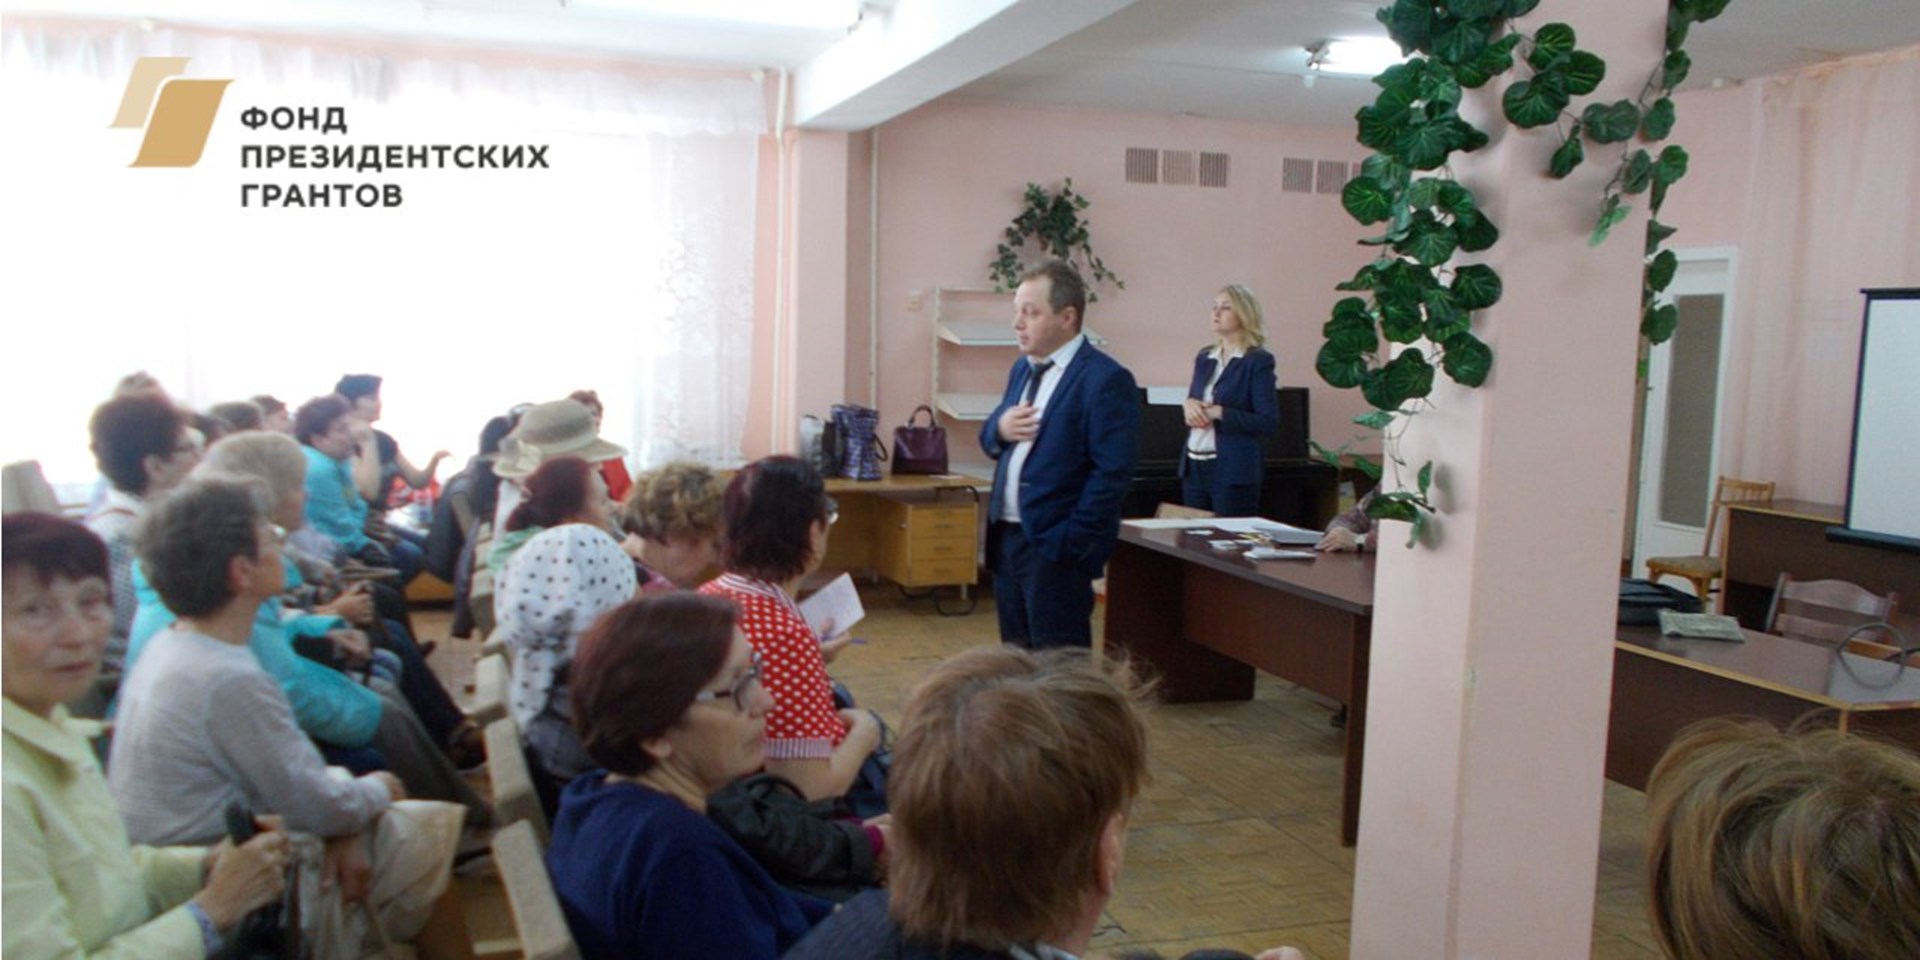 14.06.2018 Ульяновск. Школа пациентов (1)